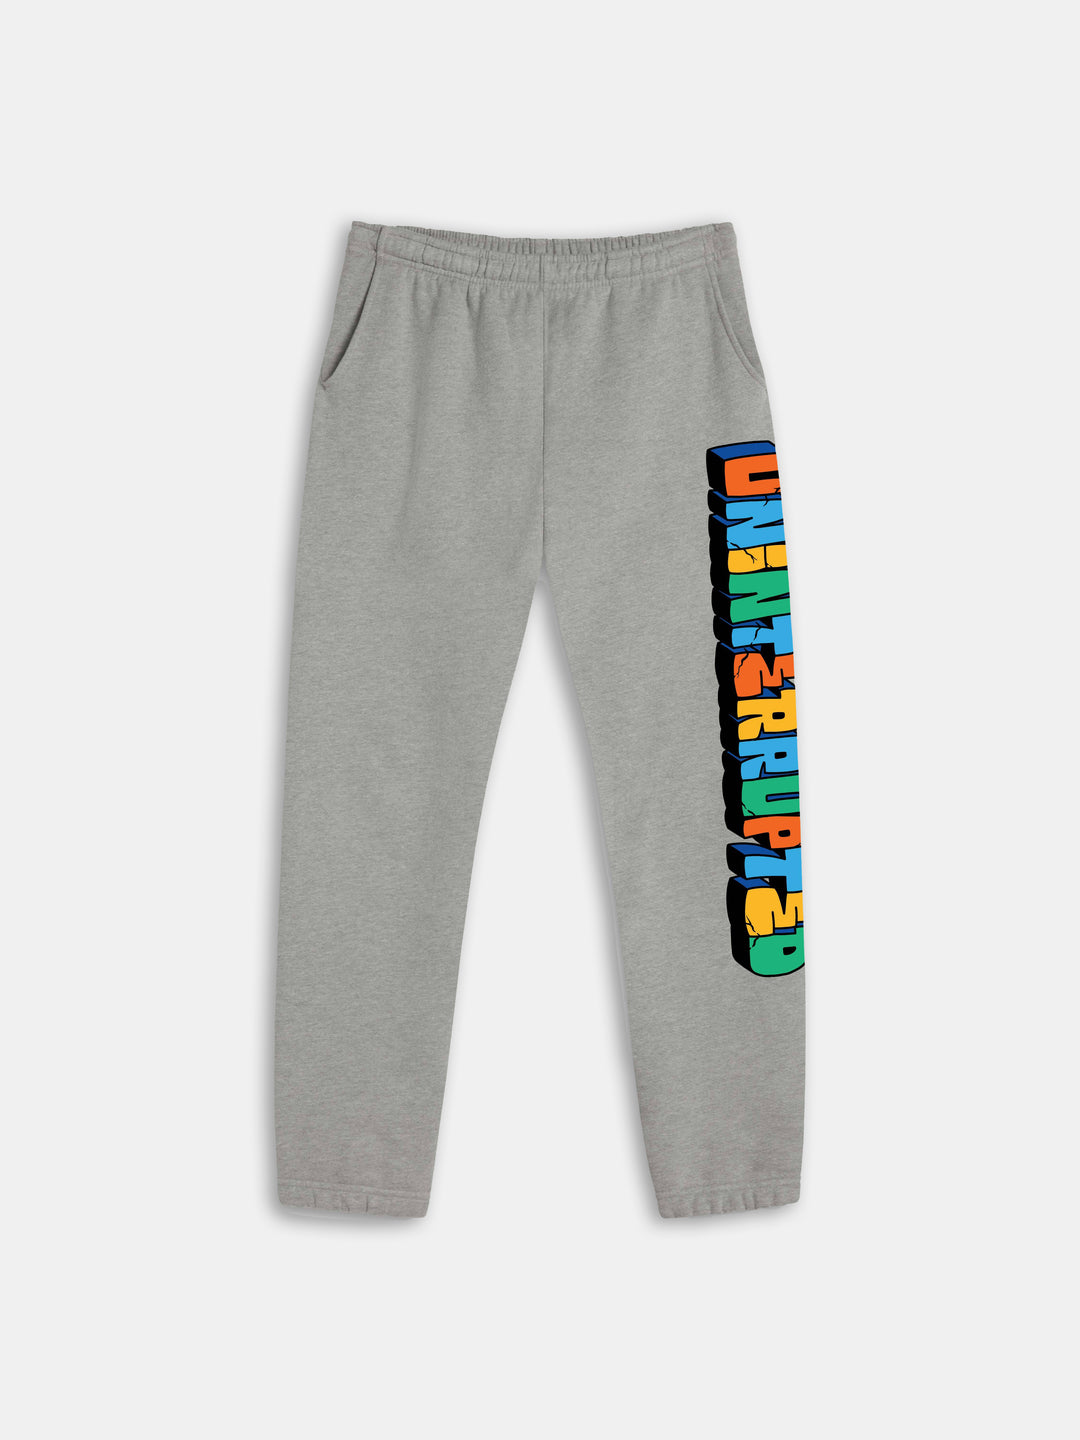 UN Concrete Sweatpant Gray - gray comfortable pants with multicolor font